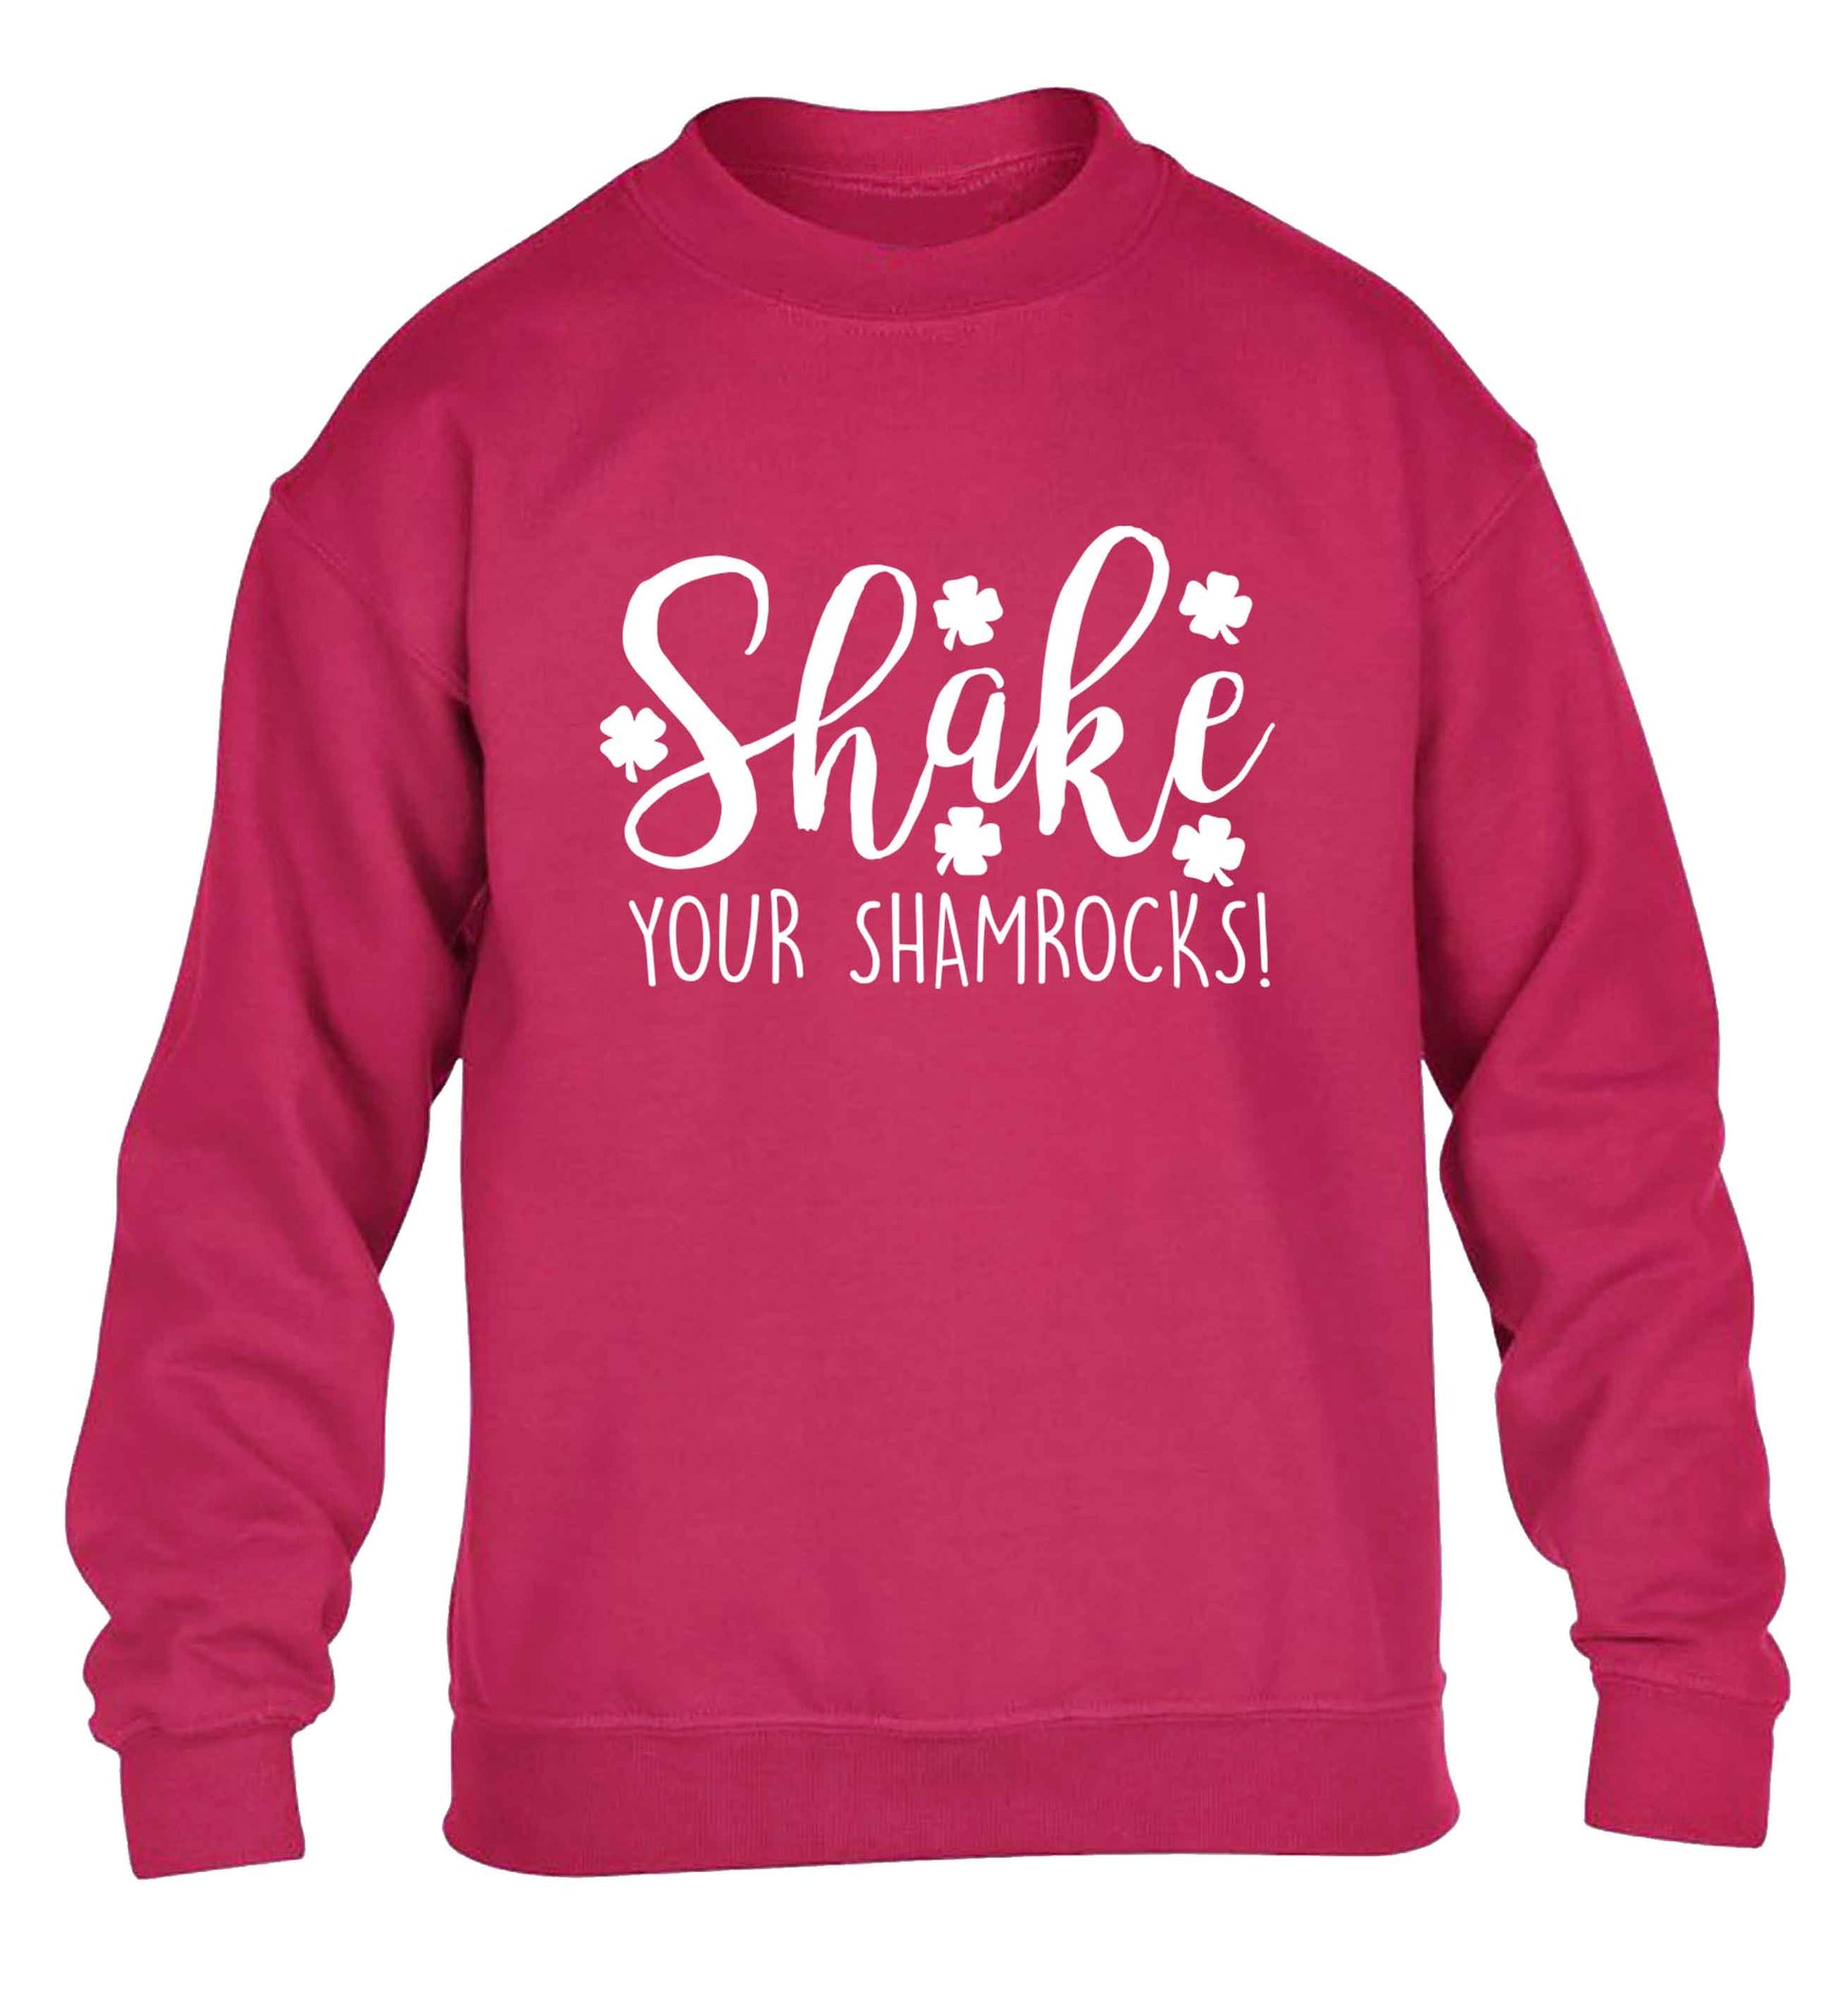 Shake your shamrocks children's pink sweater 12-13 Years